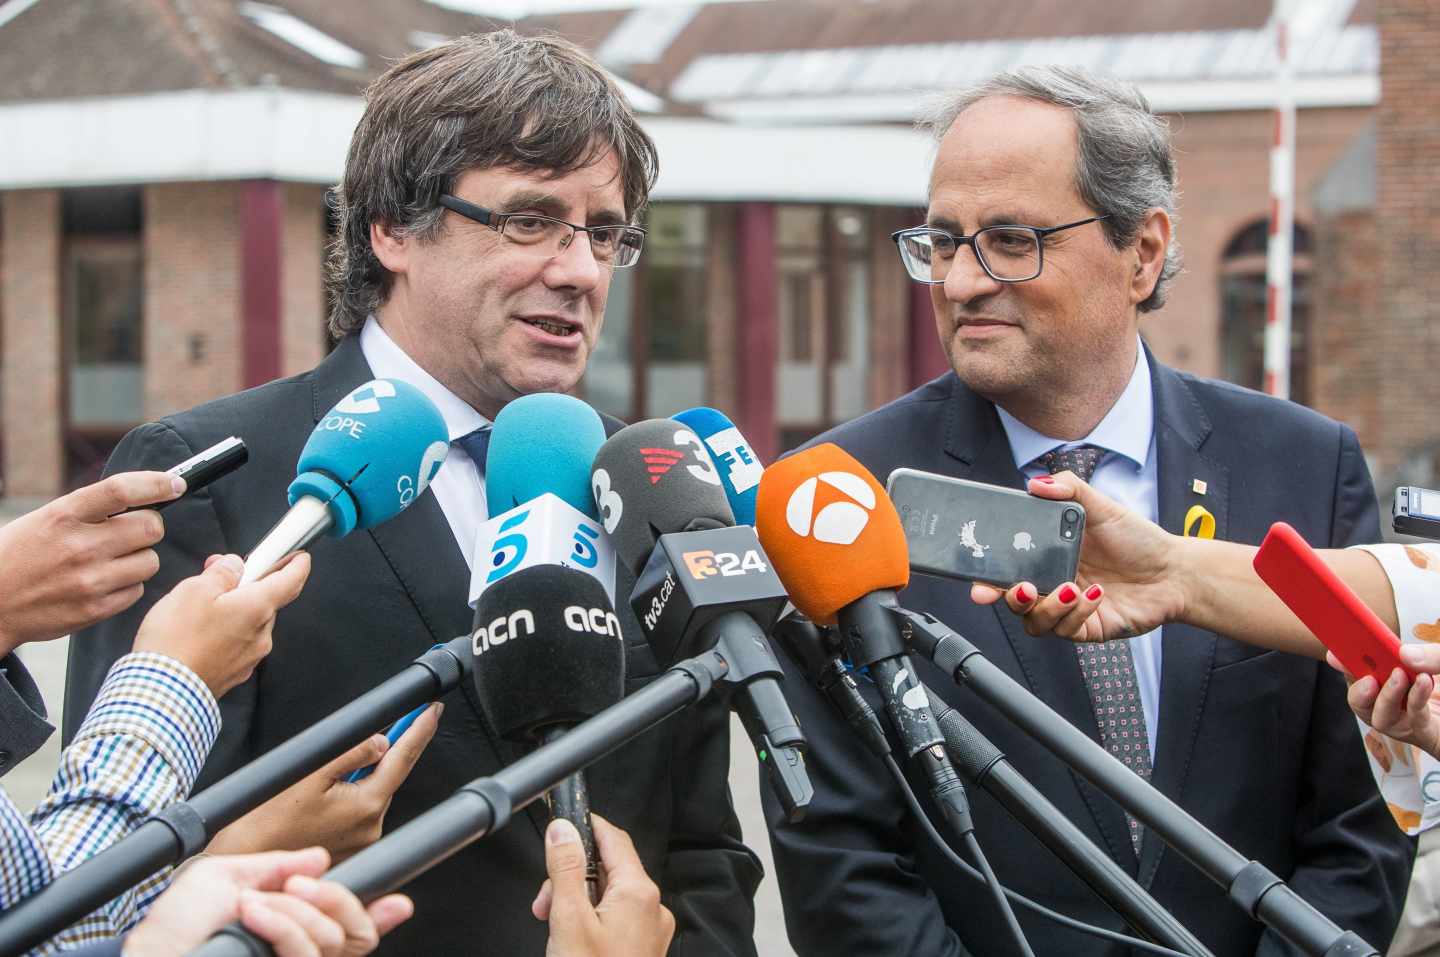 La denuncia de Puigdemont contra Llarena parte de unas declaraciones falseadas en la traducción